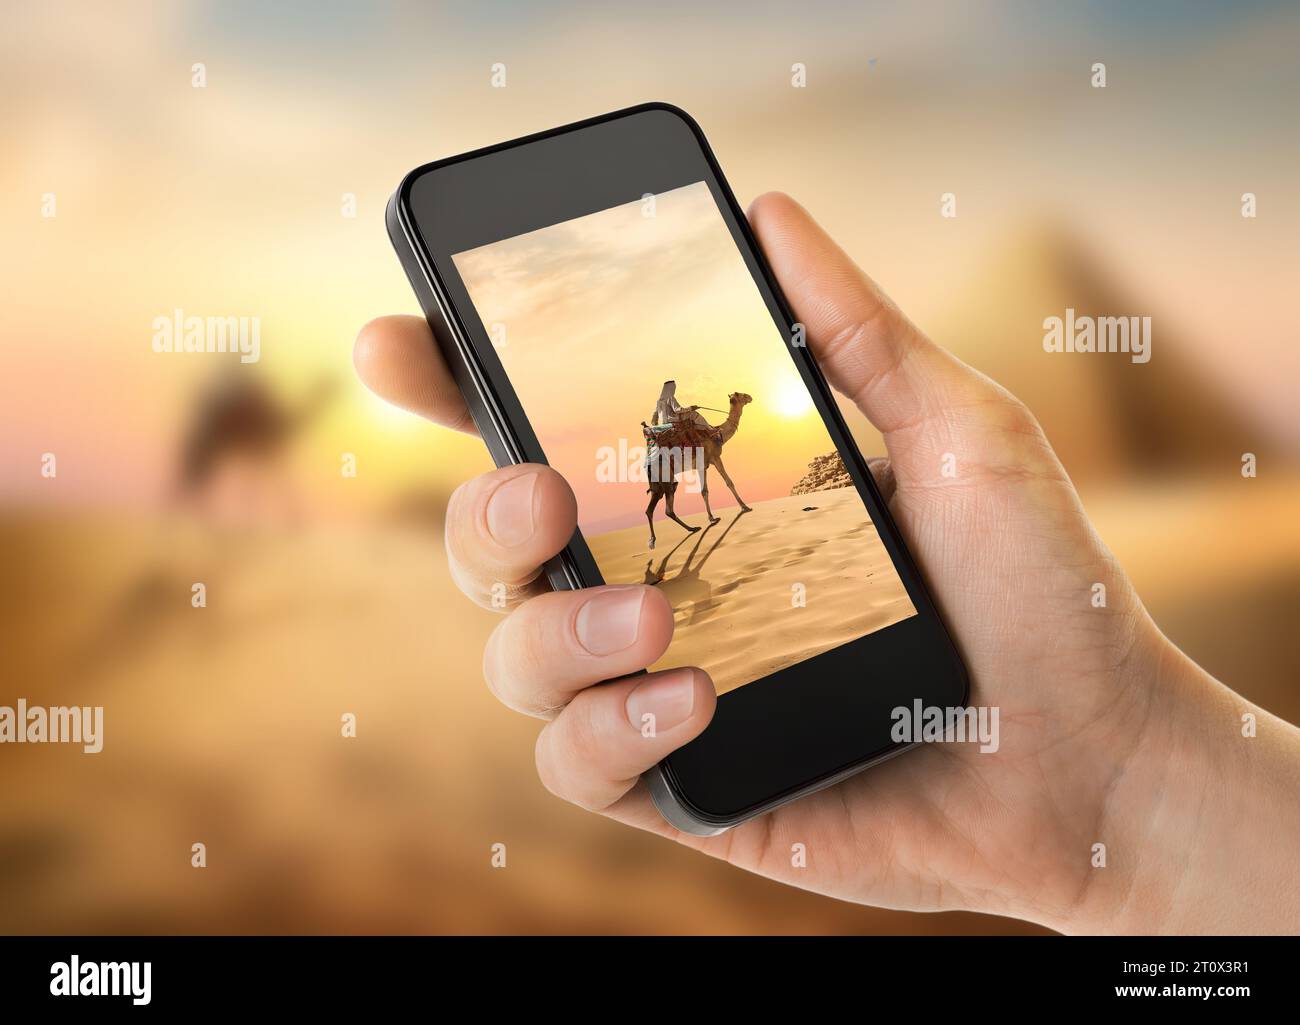 Piramidi d'Egitto fotografate su uno smartphone Foto Stock